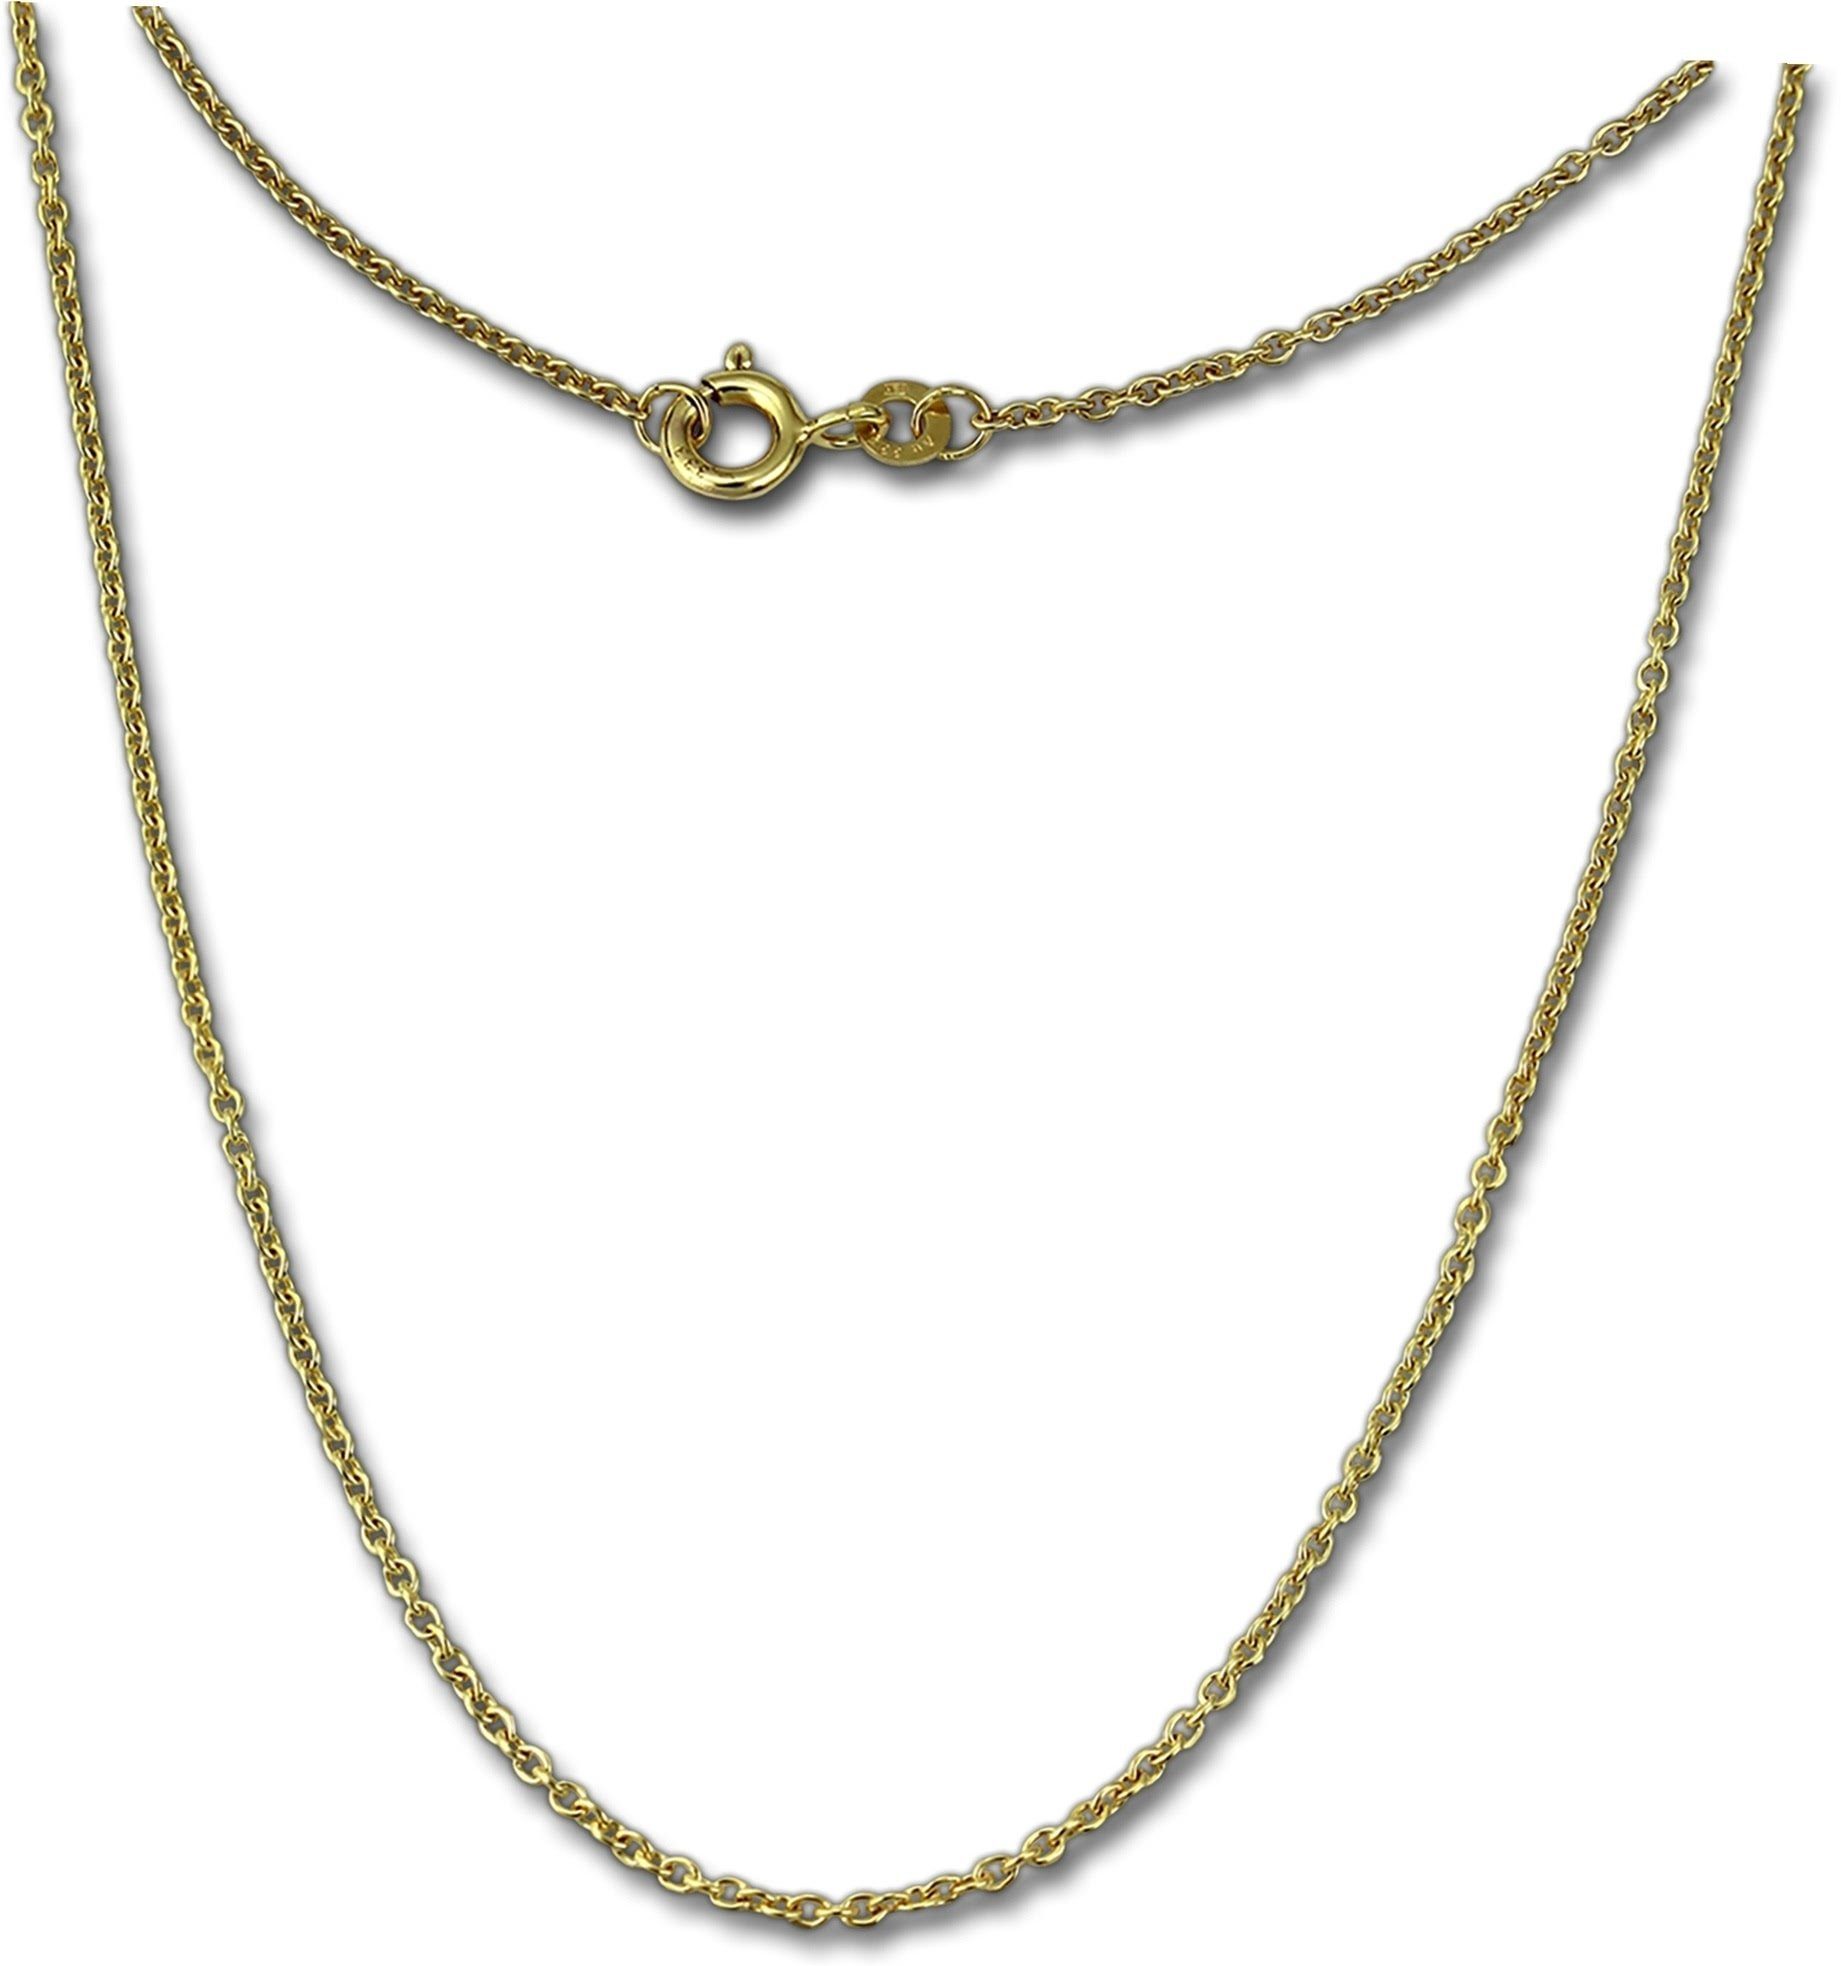 GoldDream Goldkette GoldDream Collier Halskette 8K Gold (Collier), Damen Colliers Halskette 55cm, 333 Gelbgold - 8 Karat Echtgold, 333er